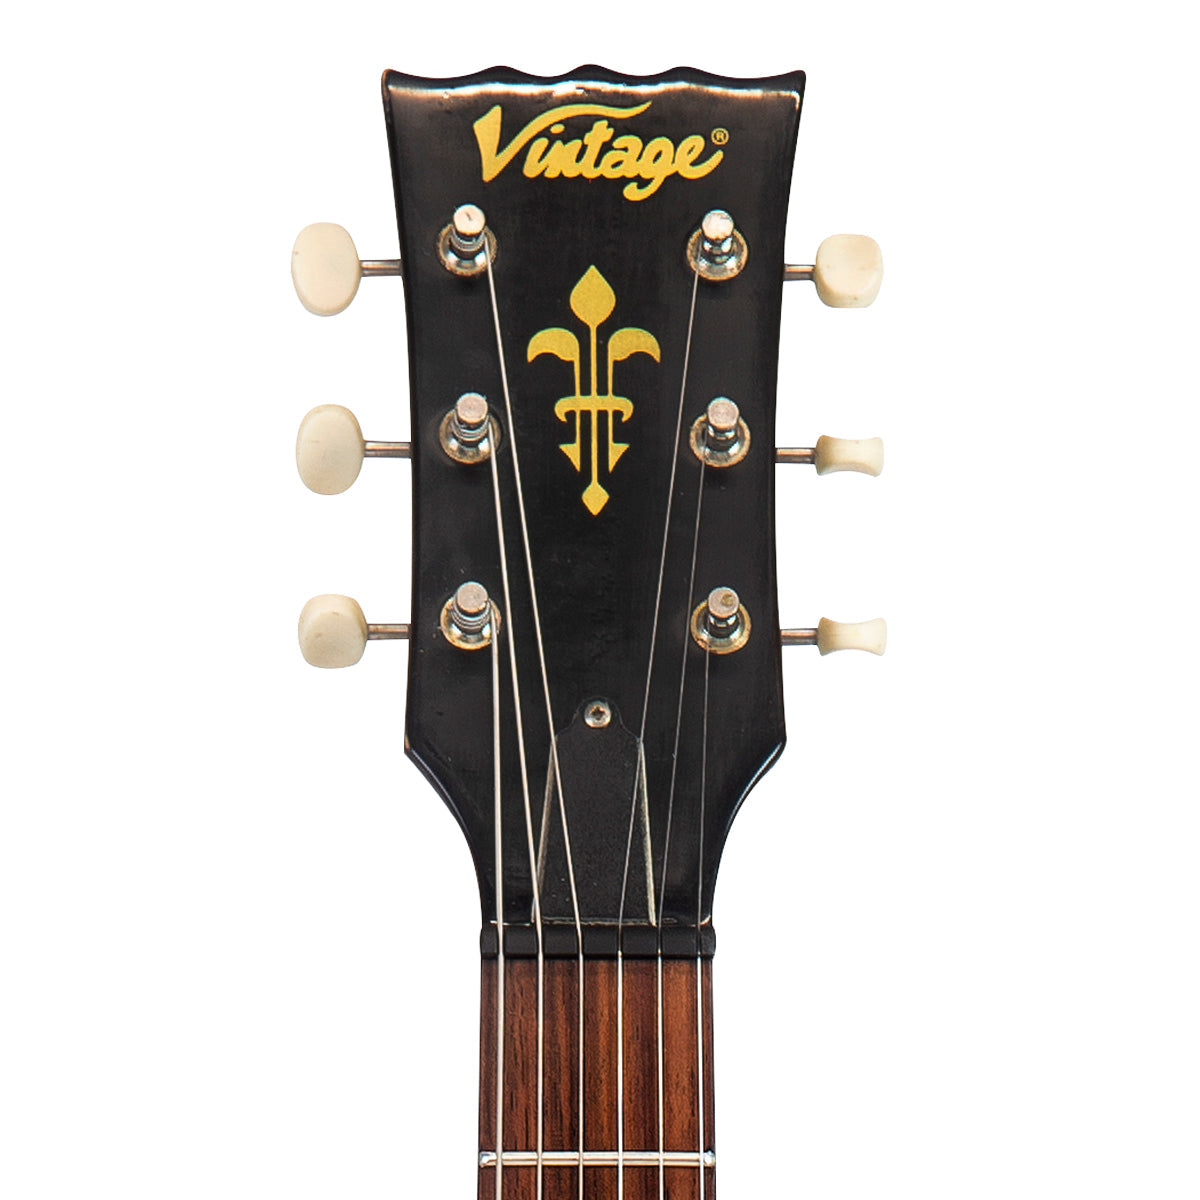 SOLD - Vintage V132 ProShop Unique ~ Relic, Electric Guitars for sale at Richards Guitars.